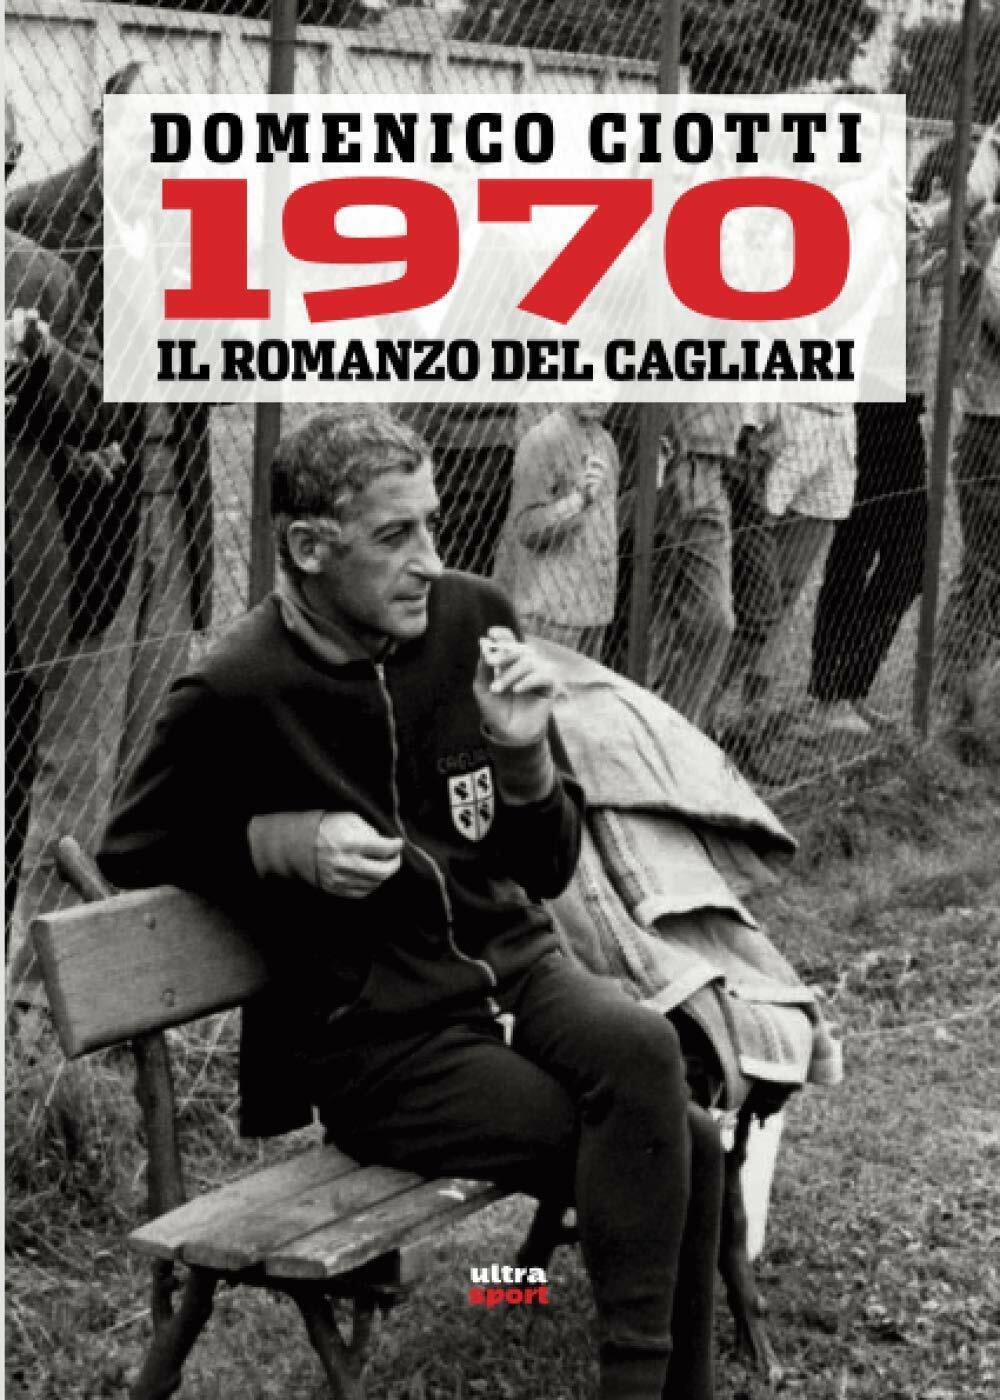 1970. IL ROMANZO DEL CAGLIARI - Domenico Ciotti - Ultra, 2020